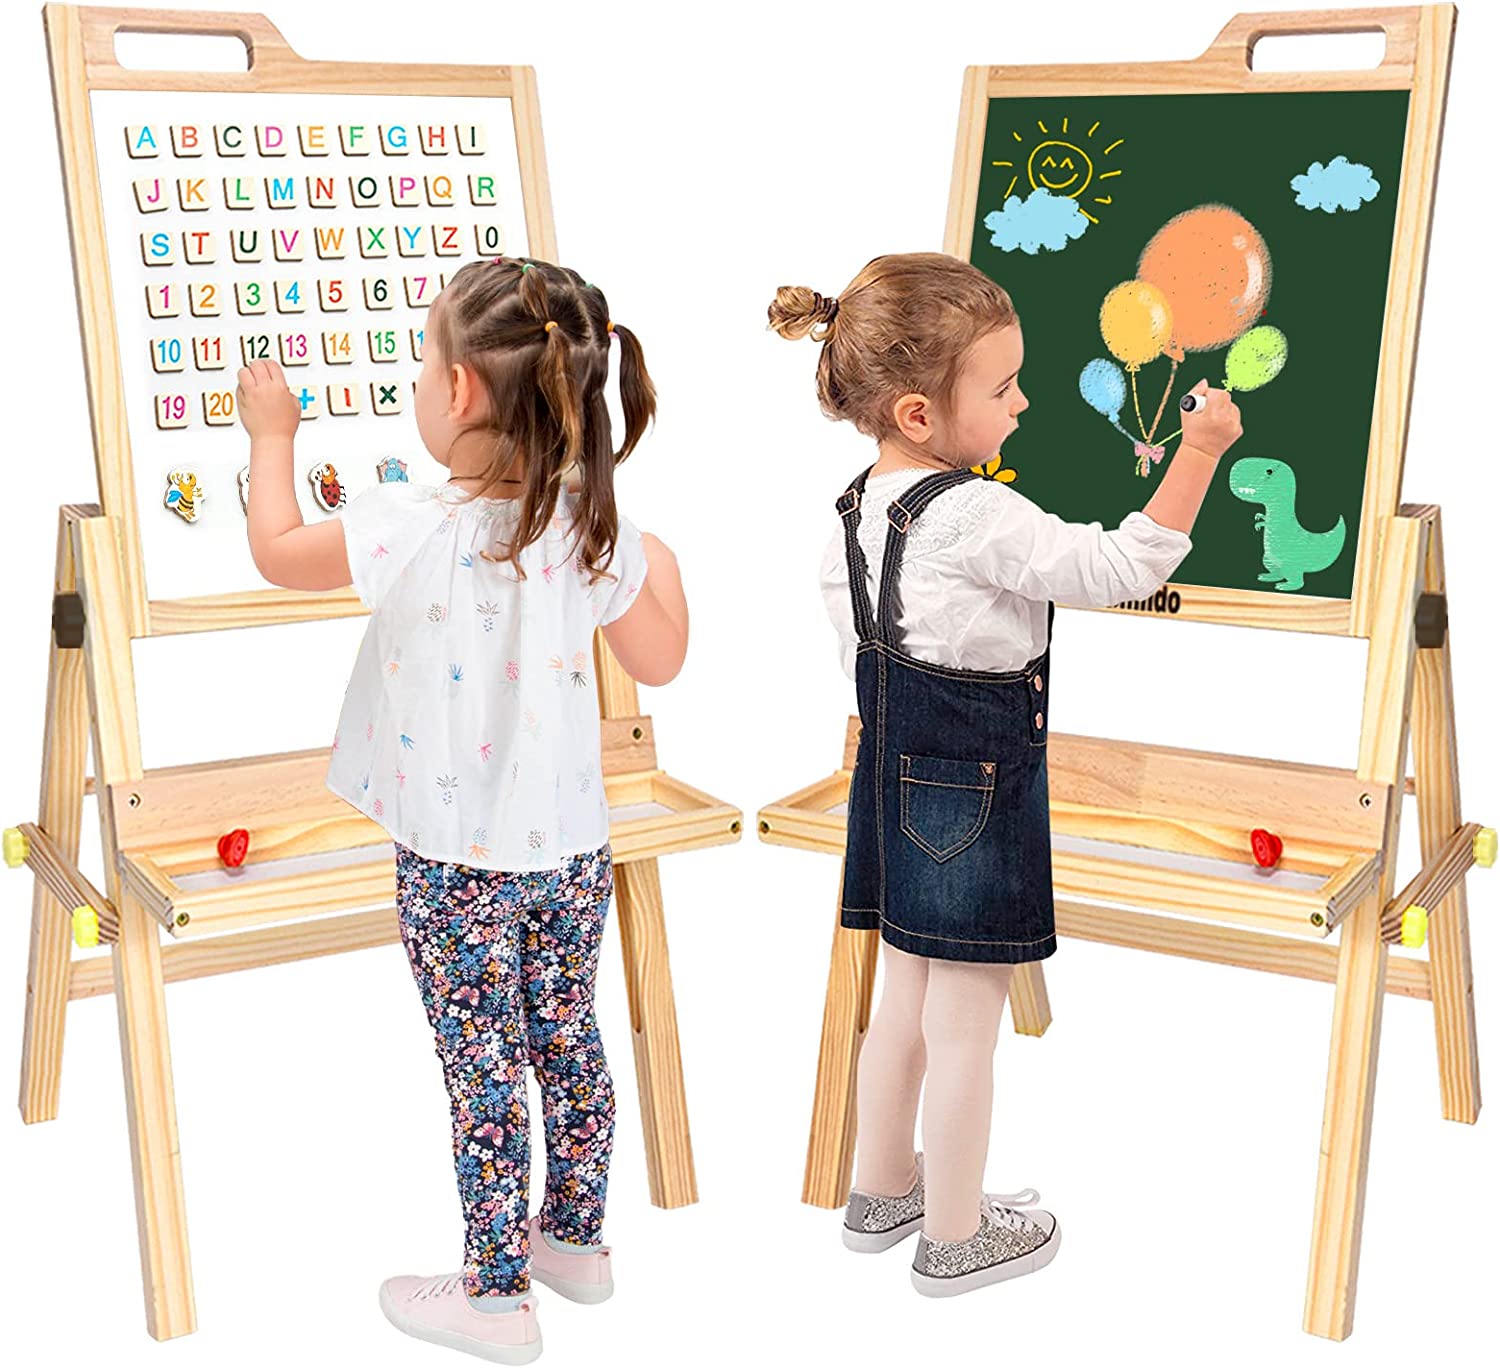 Kids Art Easel Dry Erase Board Chalkboard Creative Learning Play